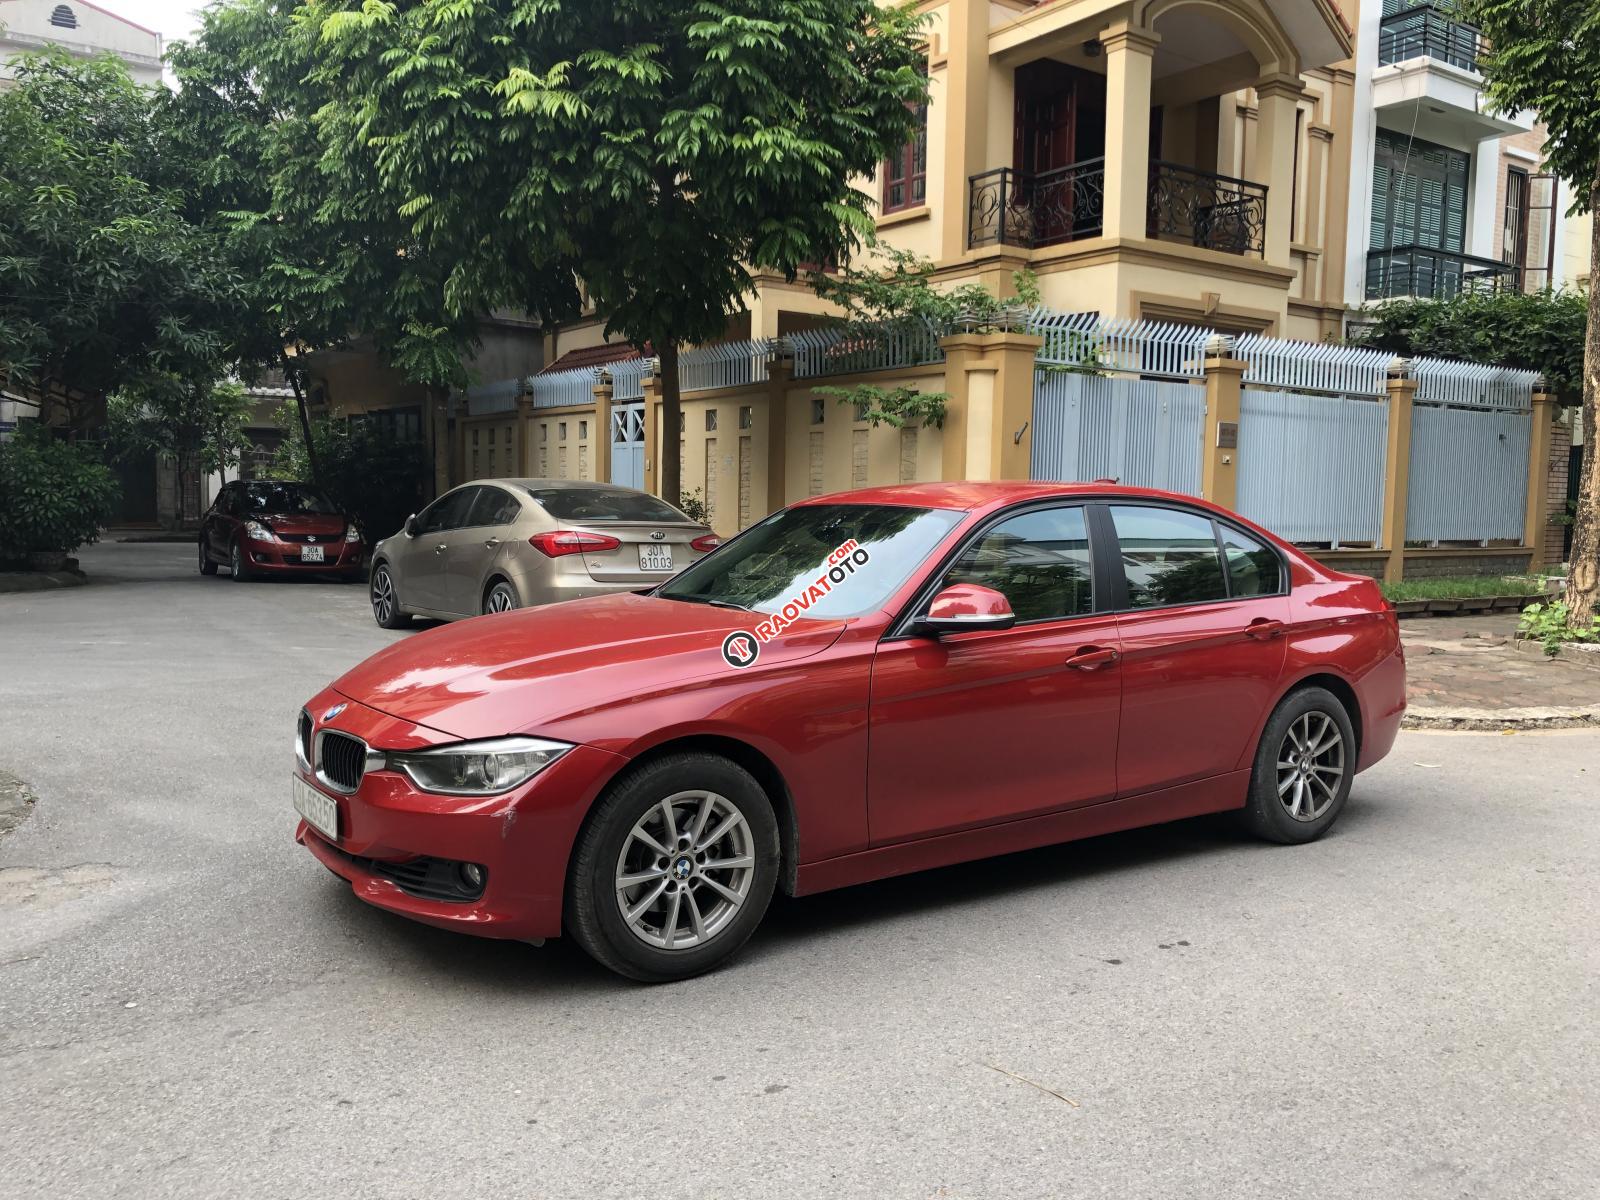 Chính chủ cần bán BMW 3 Series 320i đời 2012, màu đỏ, xe nhập liên hệ - 0989883329-3